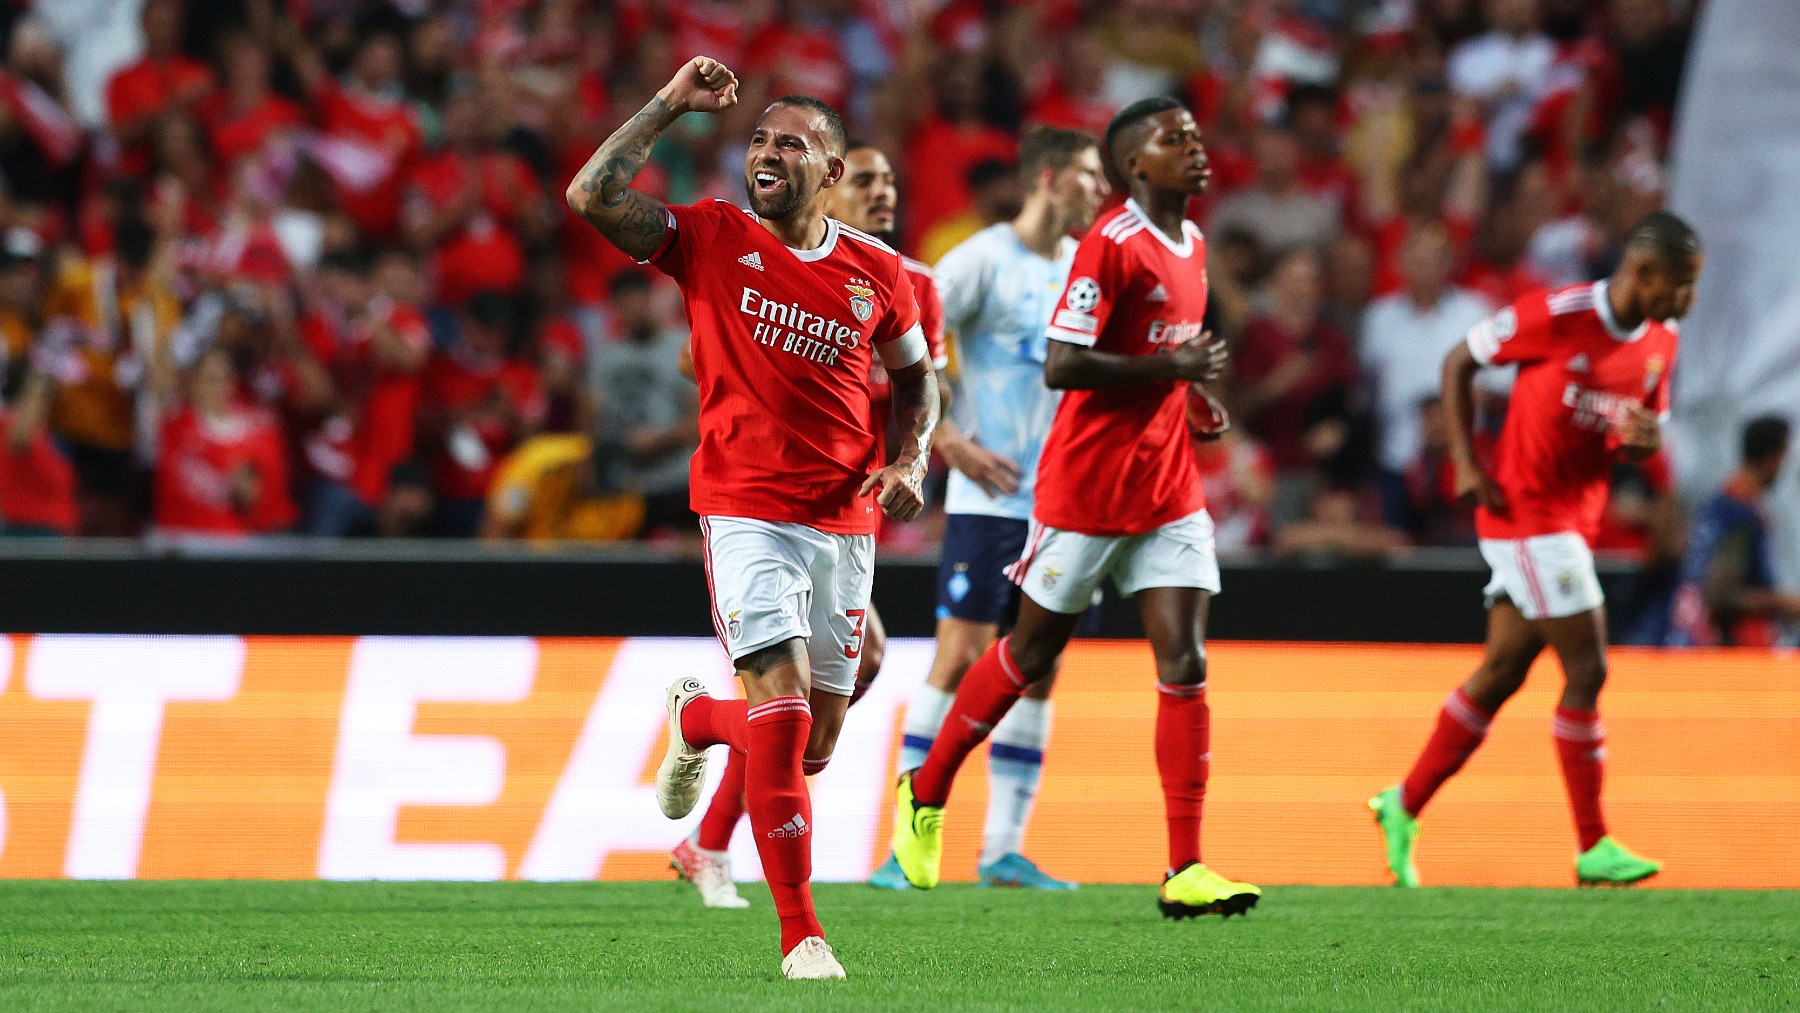 Los jugadores del Benfica celebran uno de los goles contra el Maccabi Haifa. (Getty)